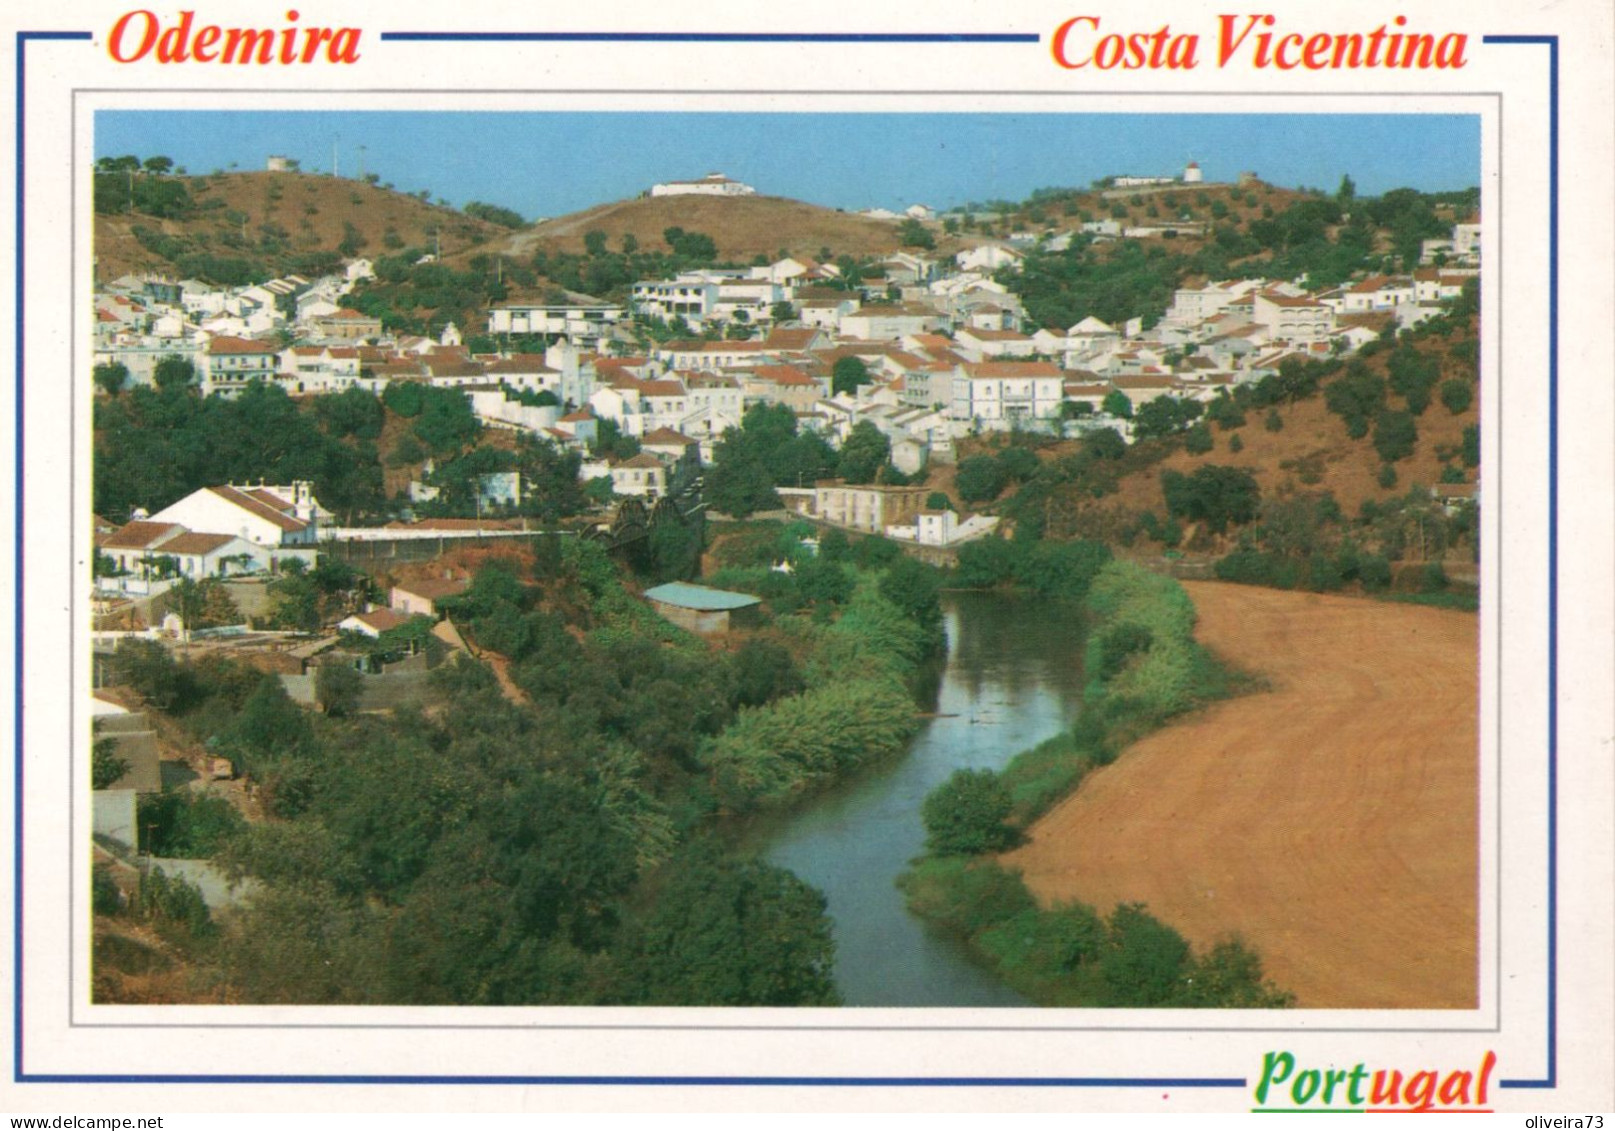 ODEMIRA - Costa Vicentina - PORTUGAL - Beja